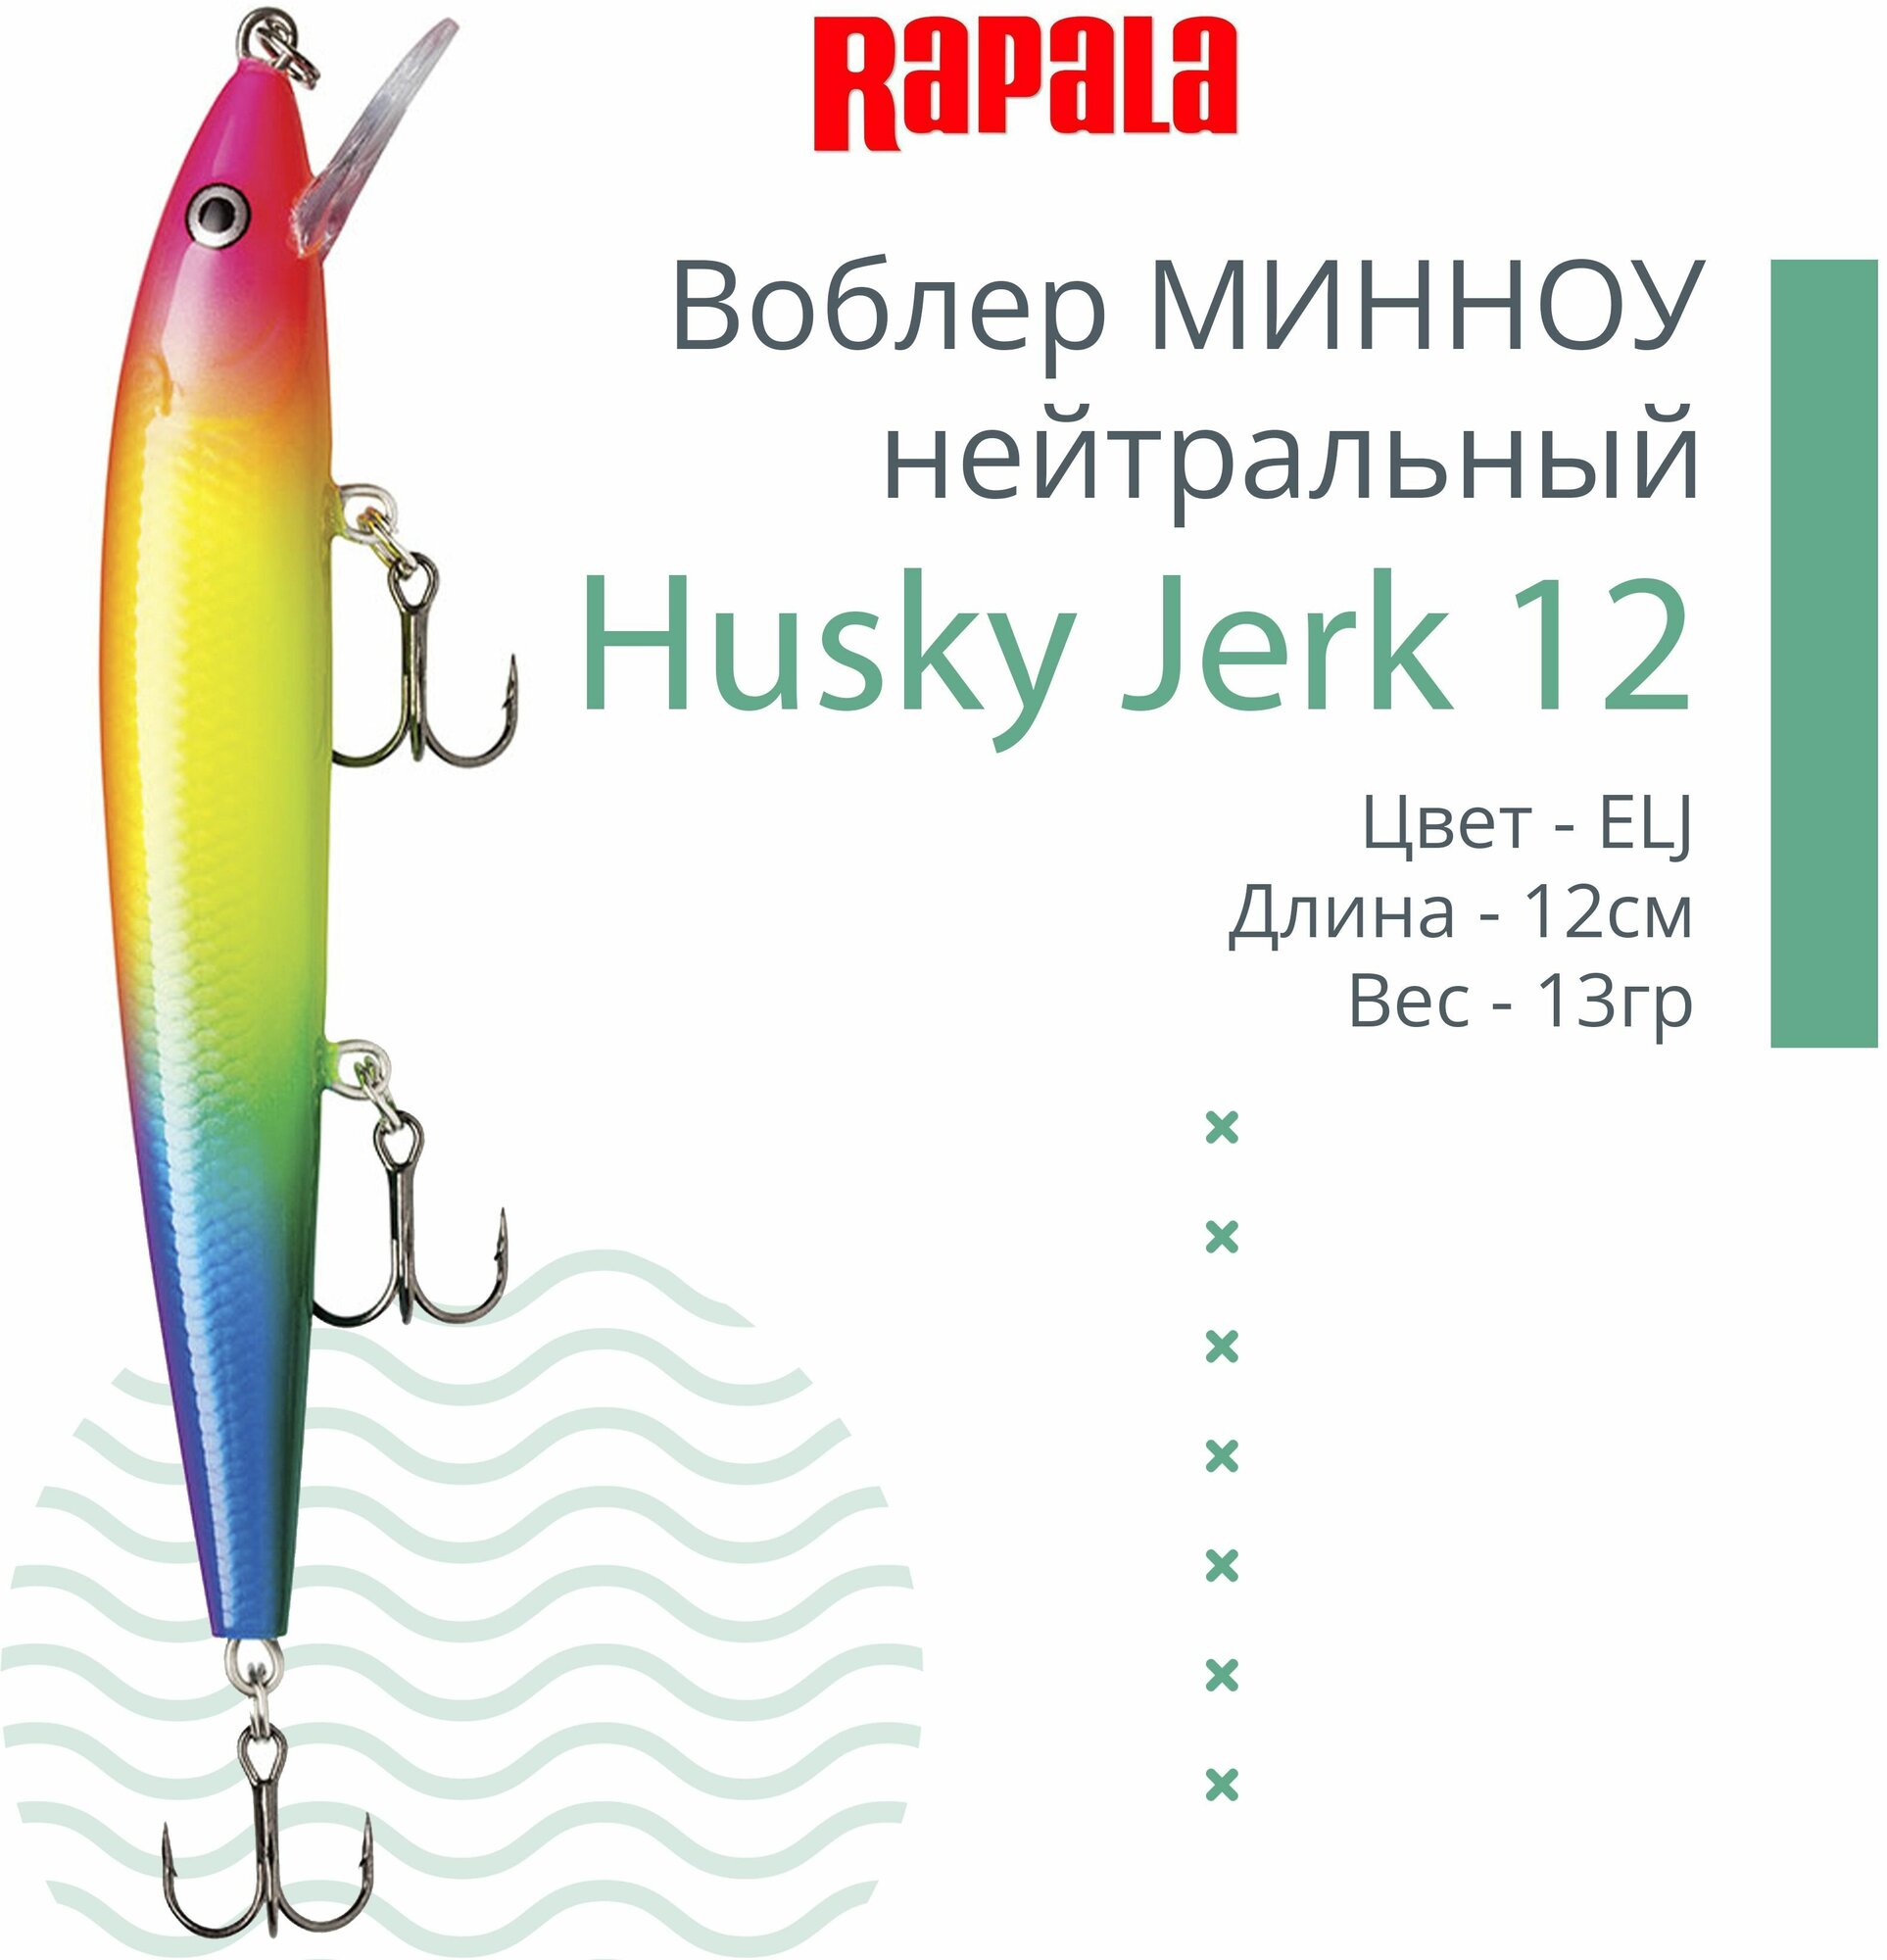 Воблер для рыбалки RAPALA Husky Jerk 12, 12см, 13гр, цвет ELJ, нейтральный